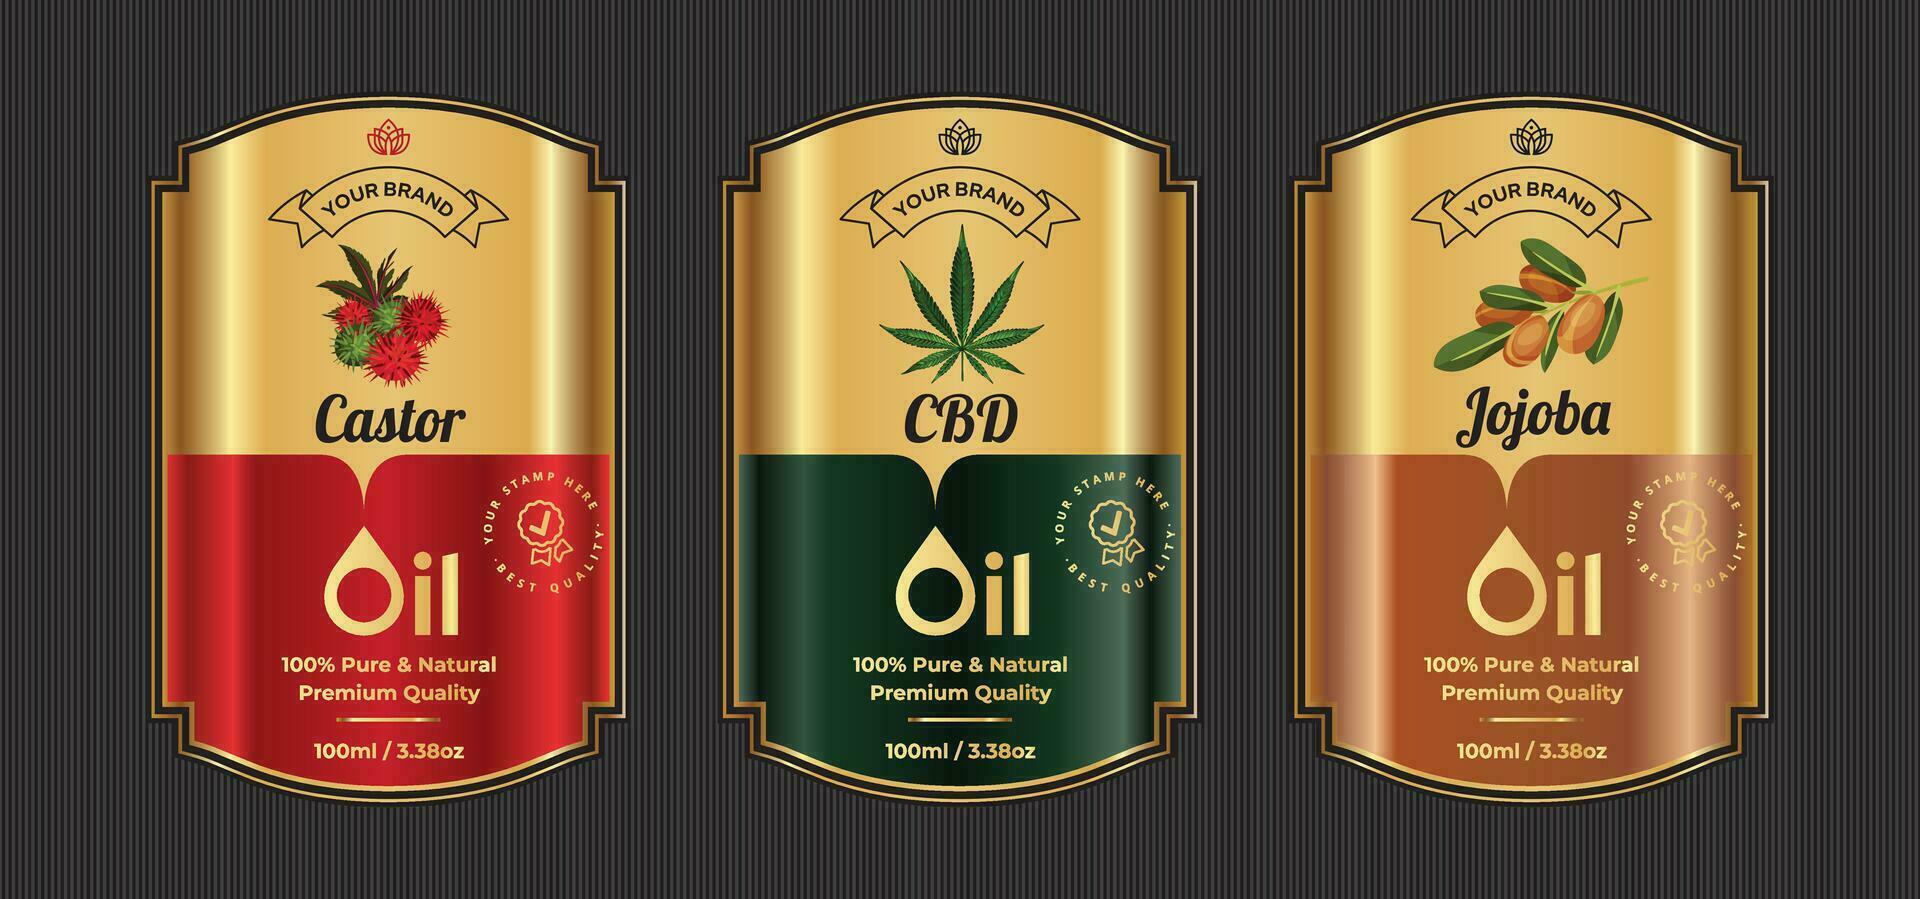 Rolle cbd und Jojoba Öl Etikette Design Stil Jahrgang Gold Prämie Etiketten vektor